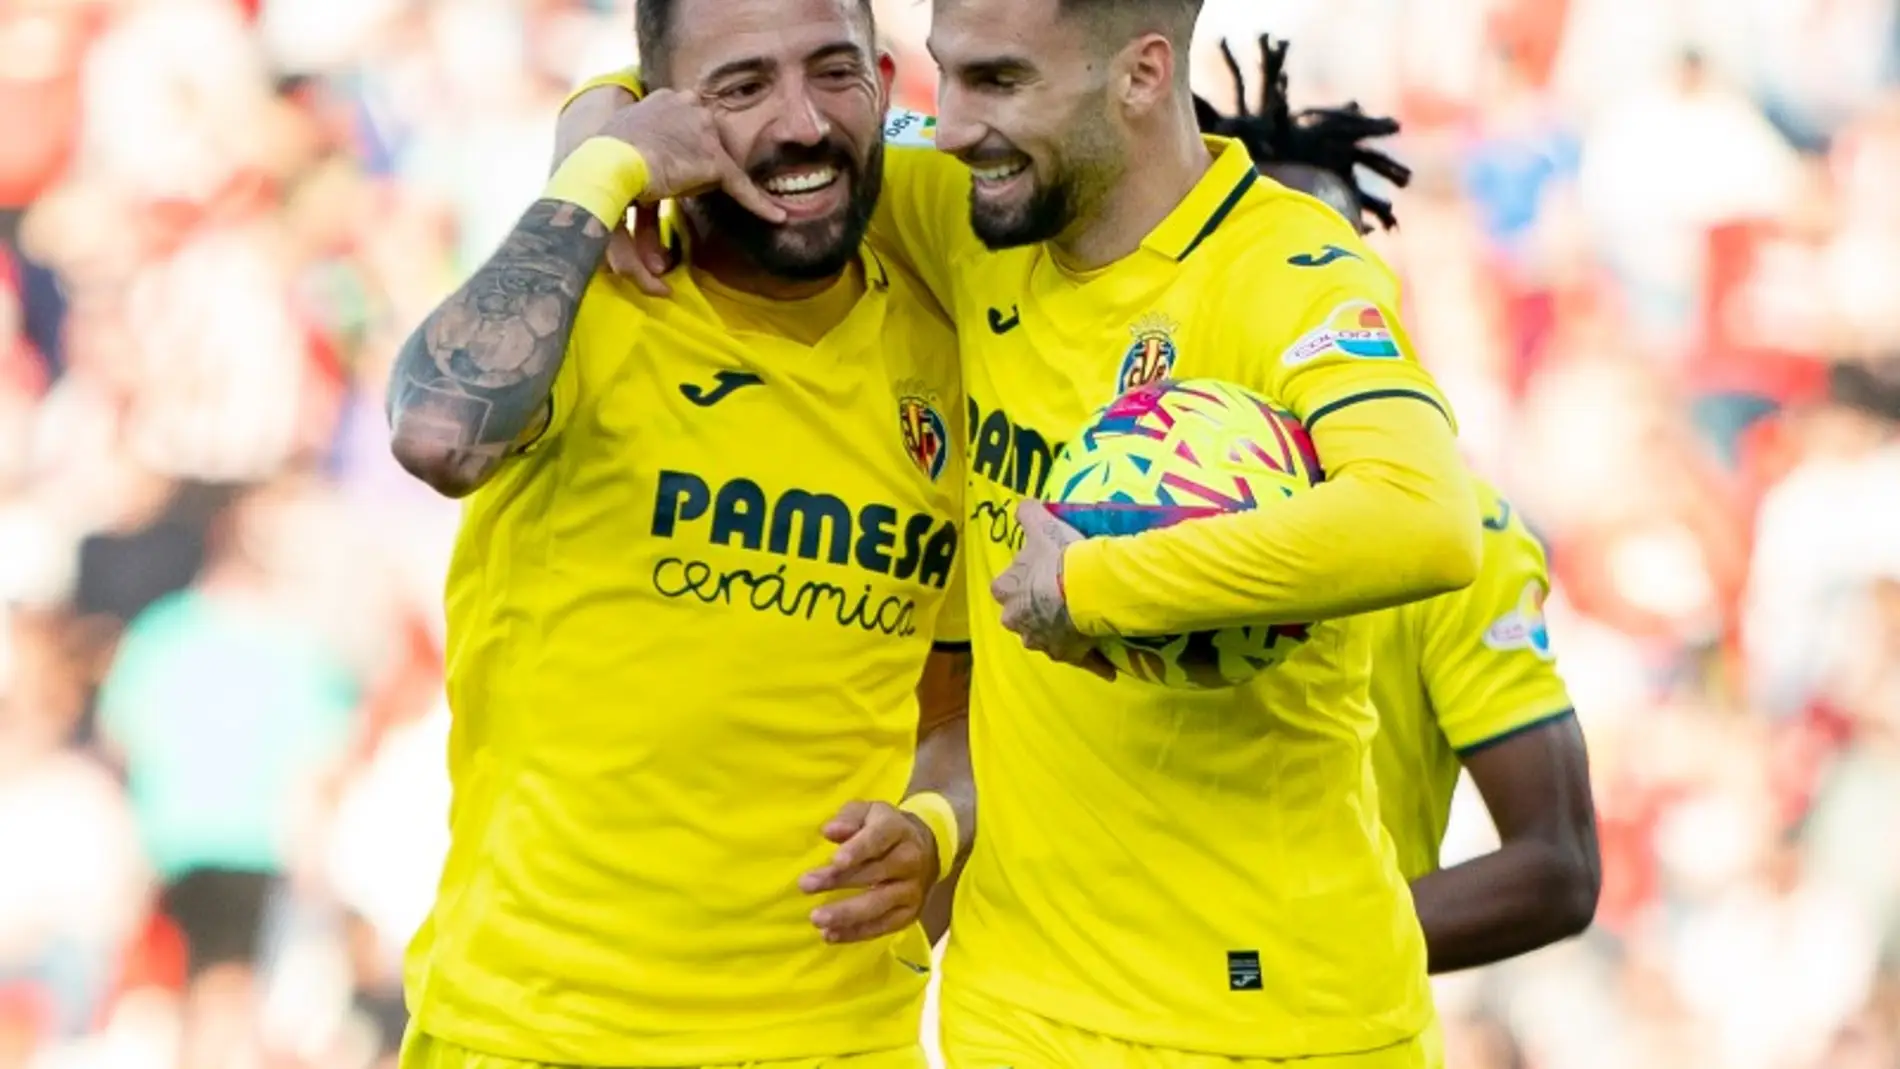 Morales y Baena celebran un gol en Almeria